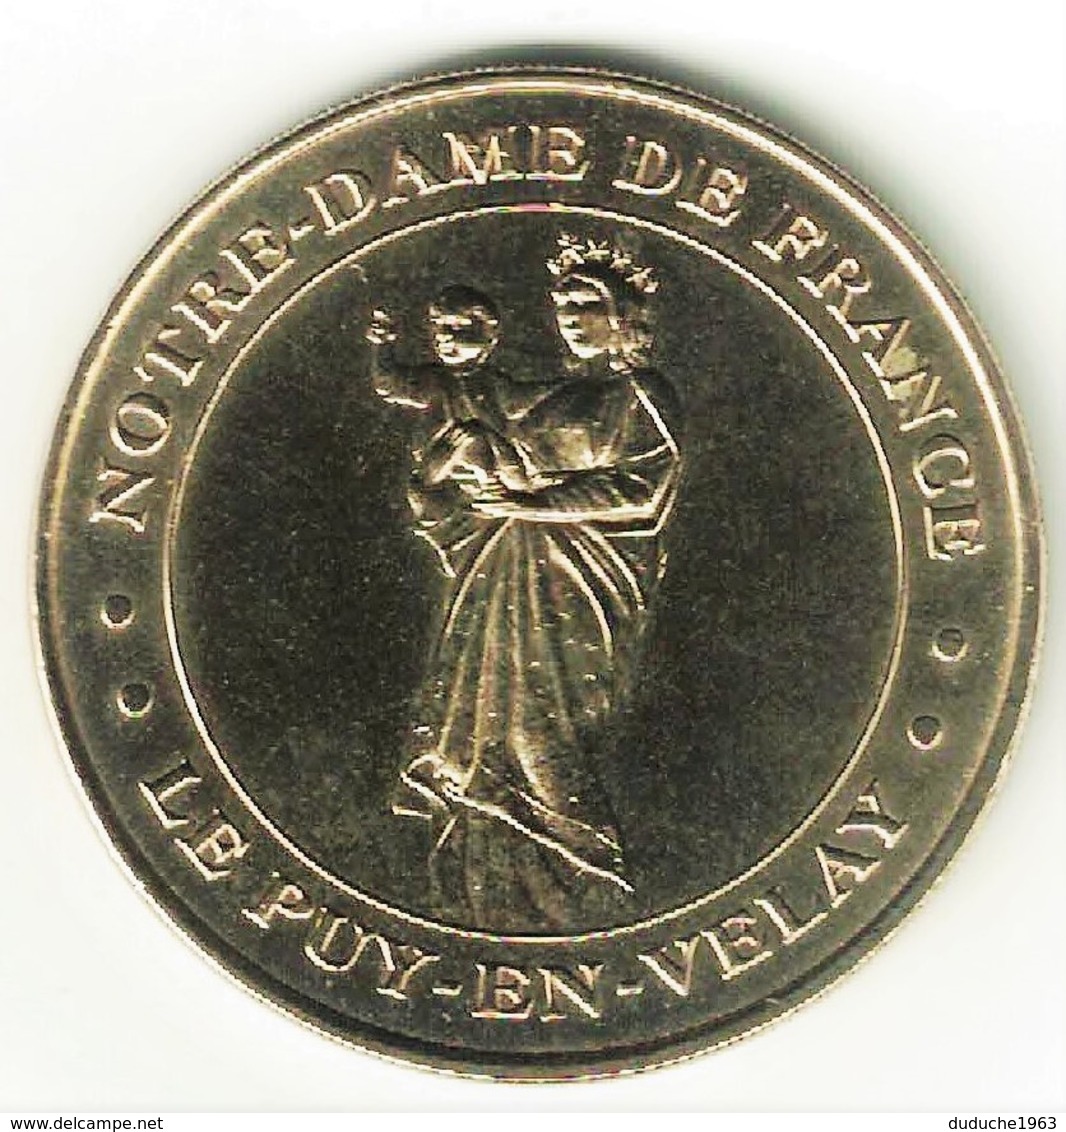 Monnaie De Paris 43.Puy En Velay - Notre Dame De France 2000 - 2000